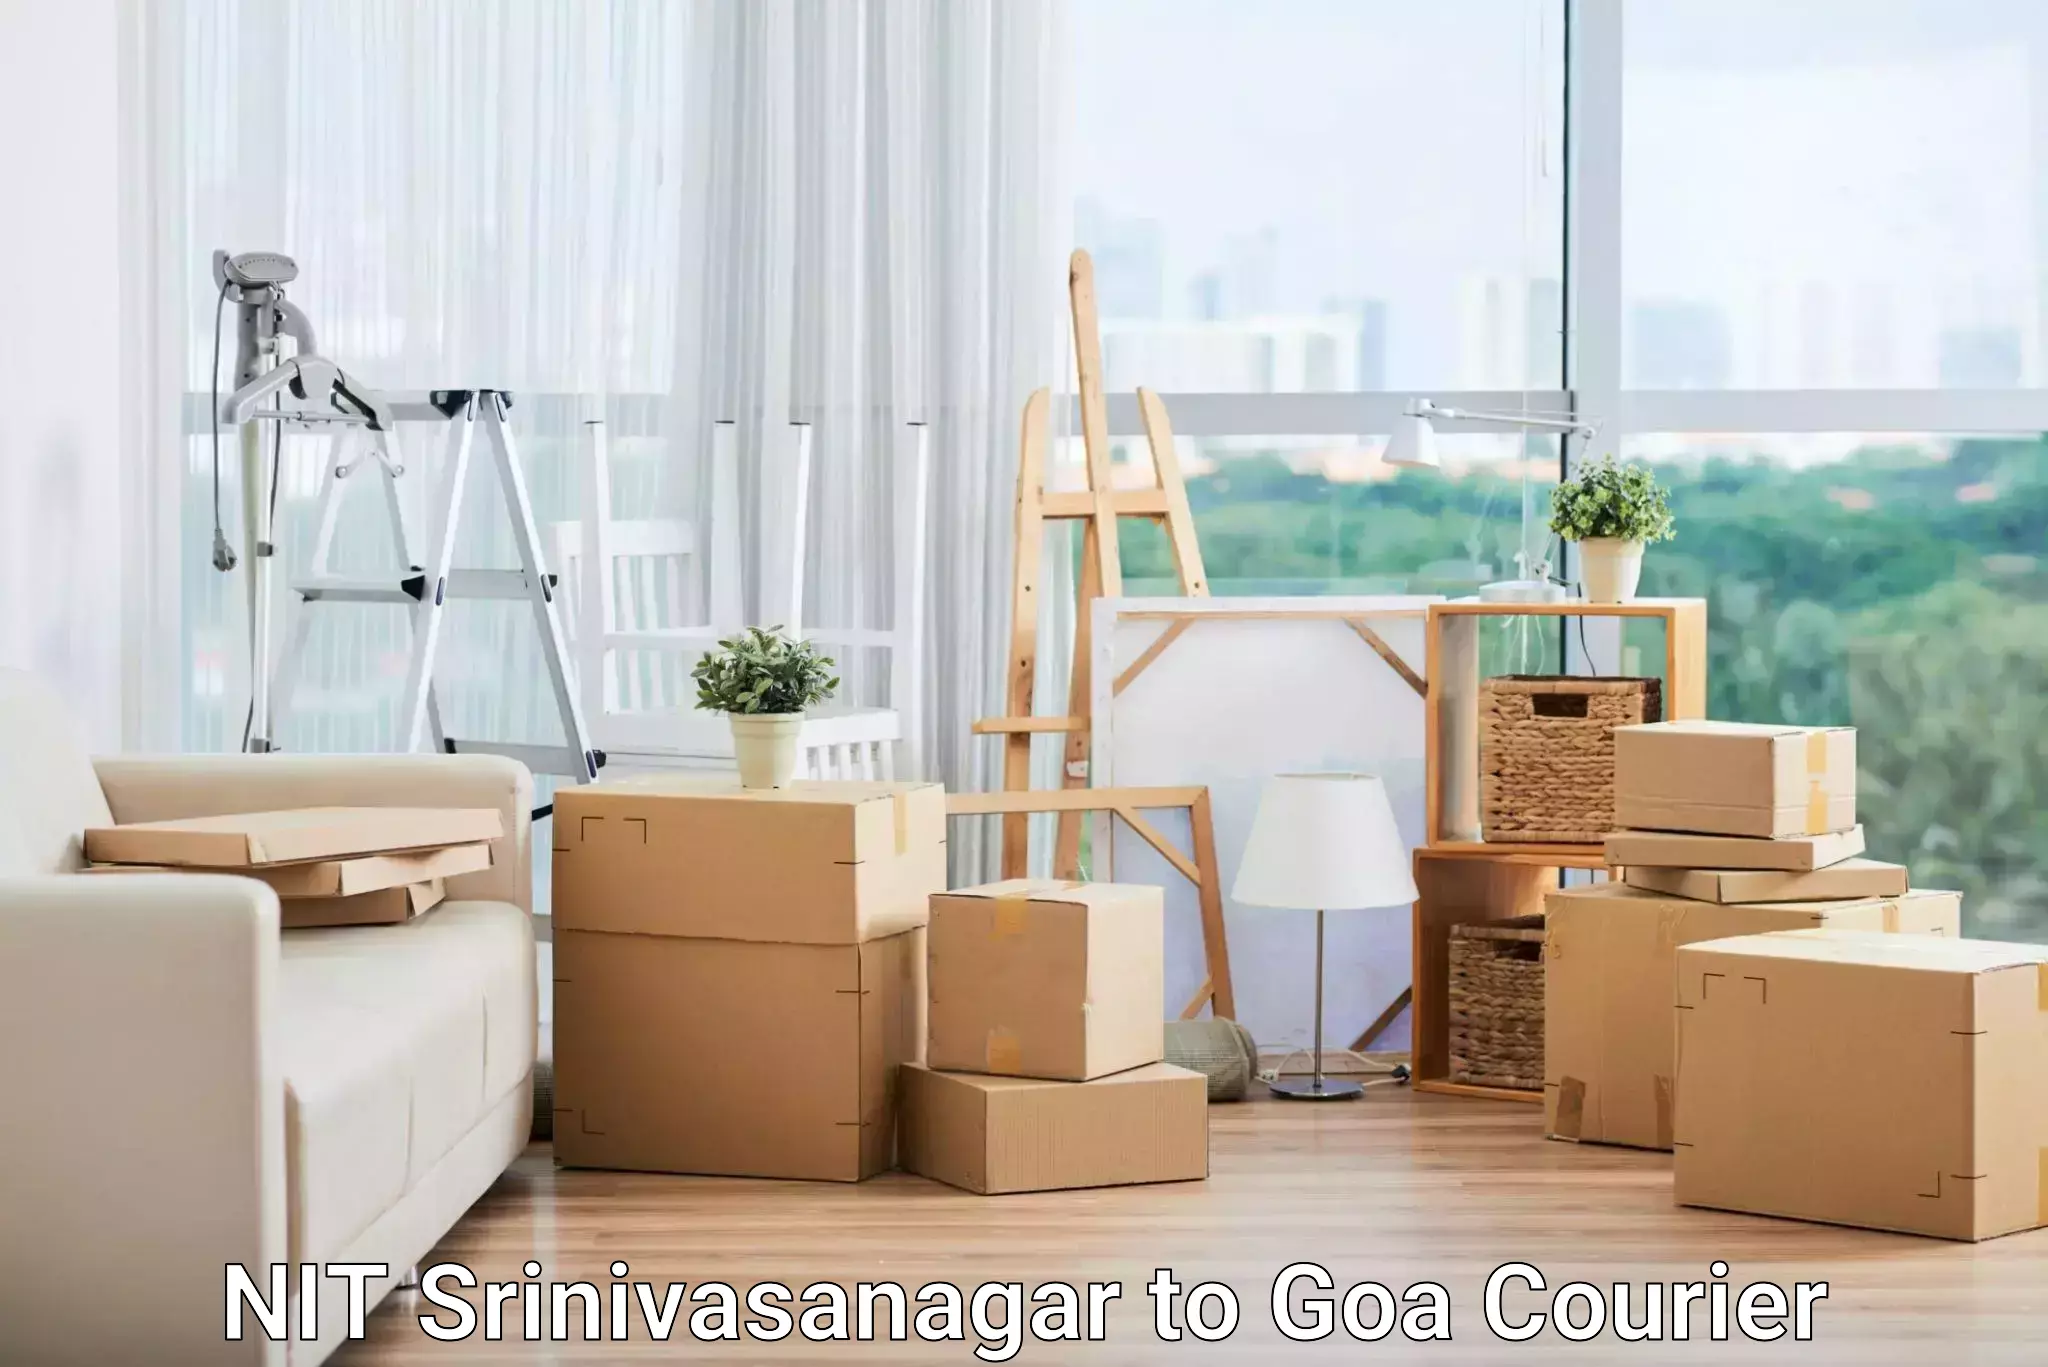 Customizable shipping options NIT Srinivasanagar to NIT Goa